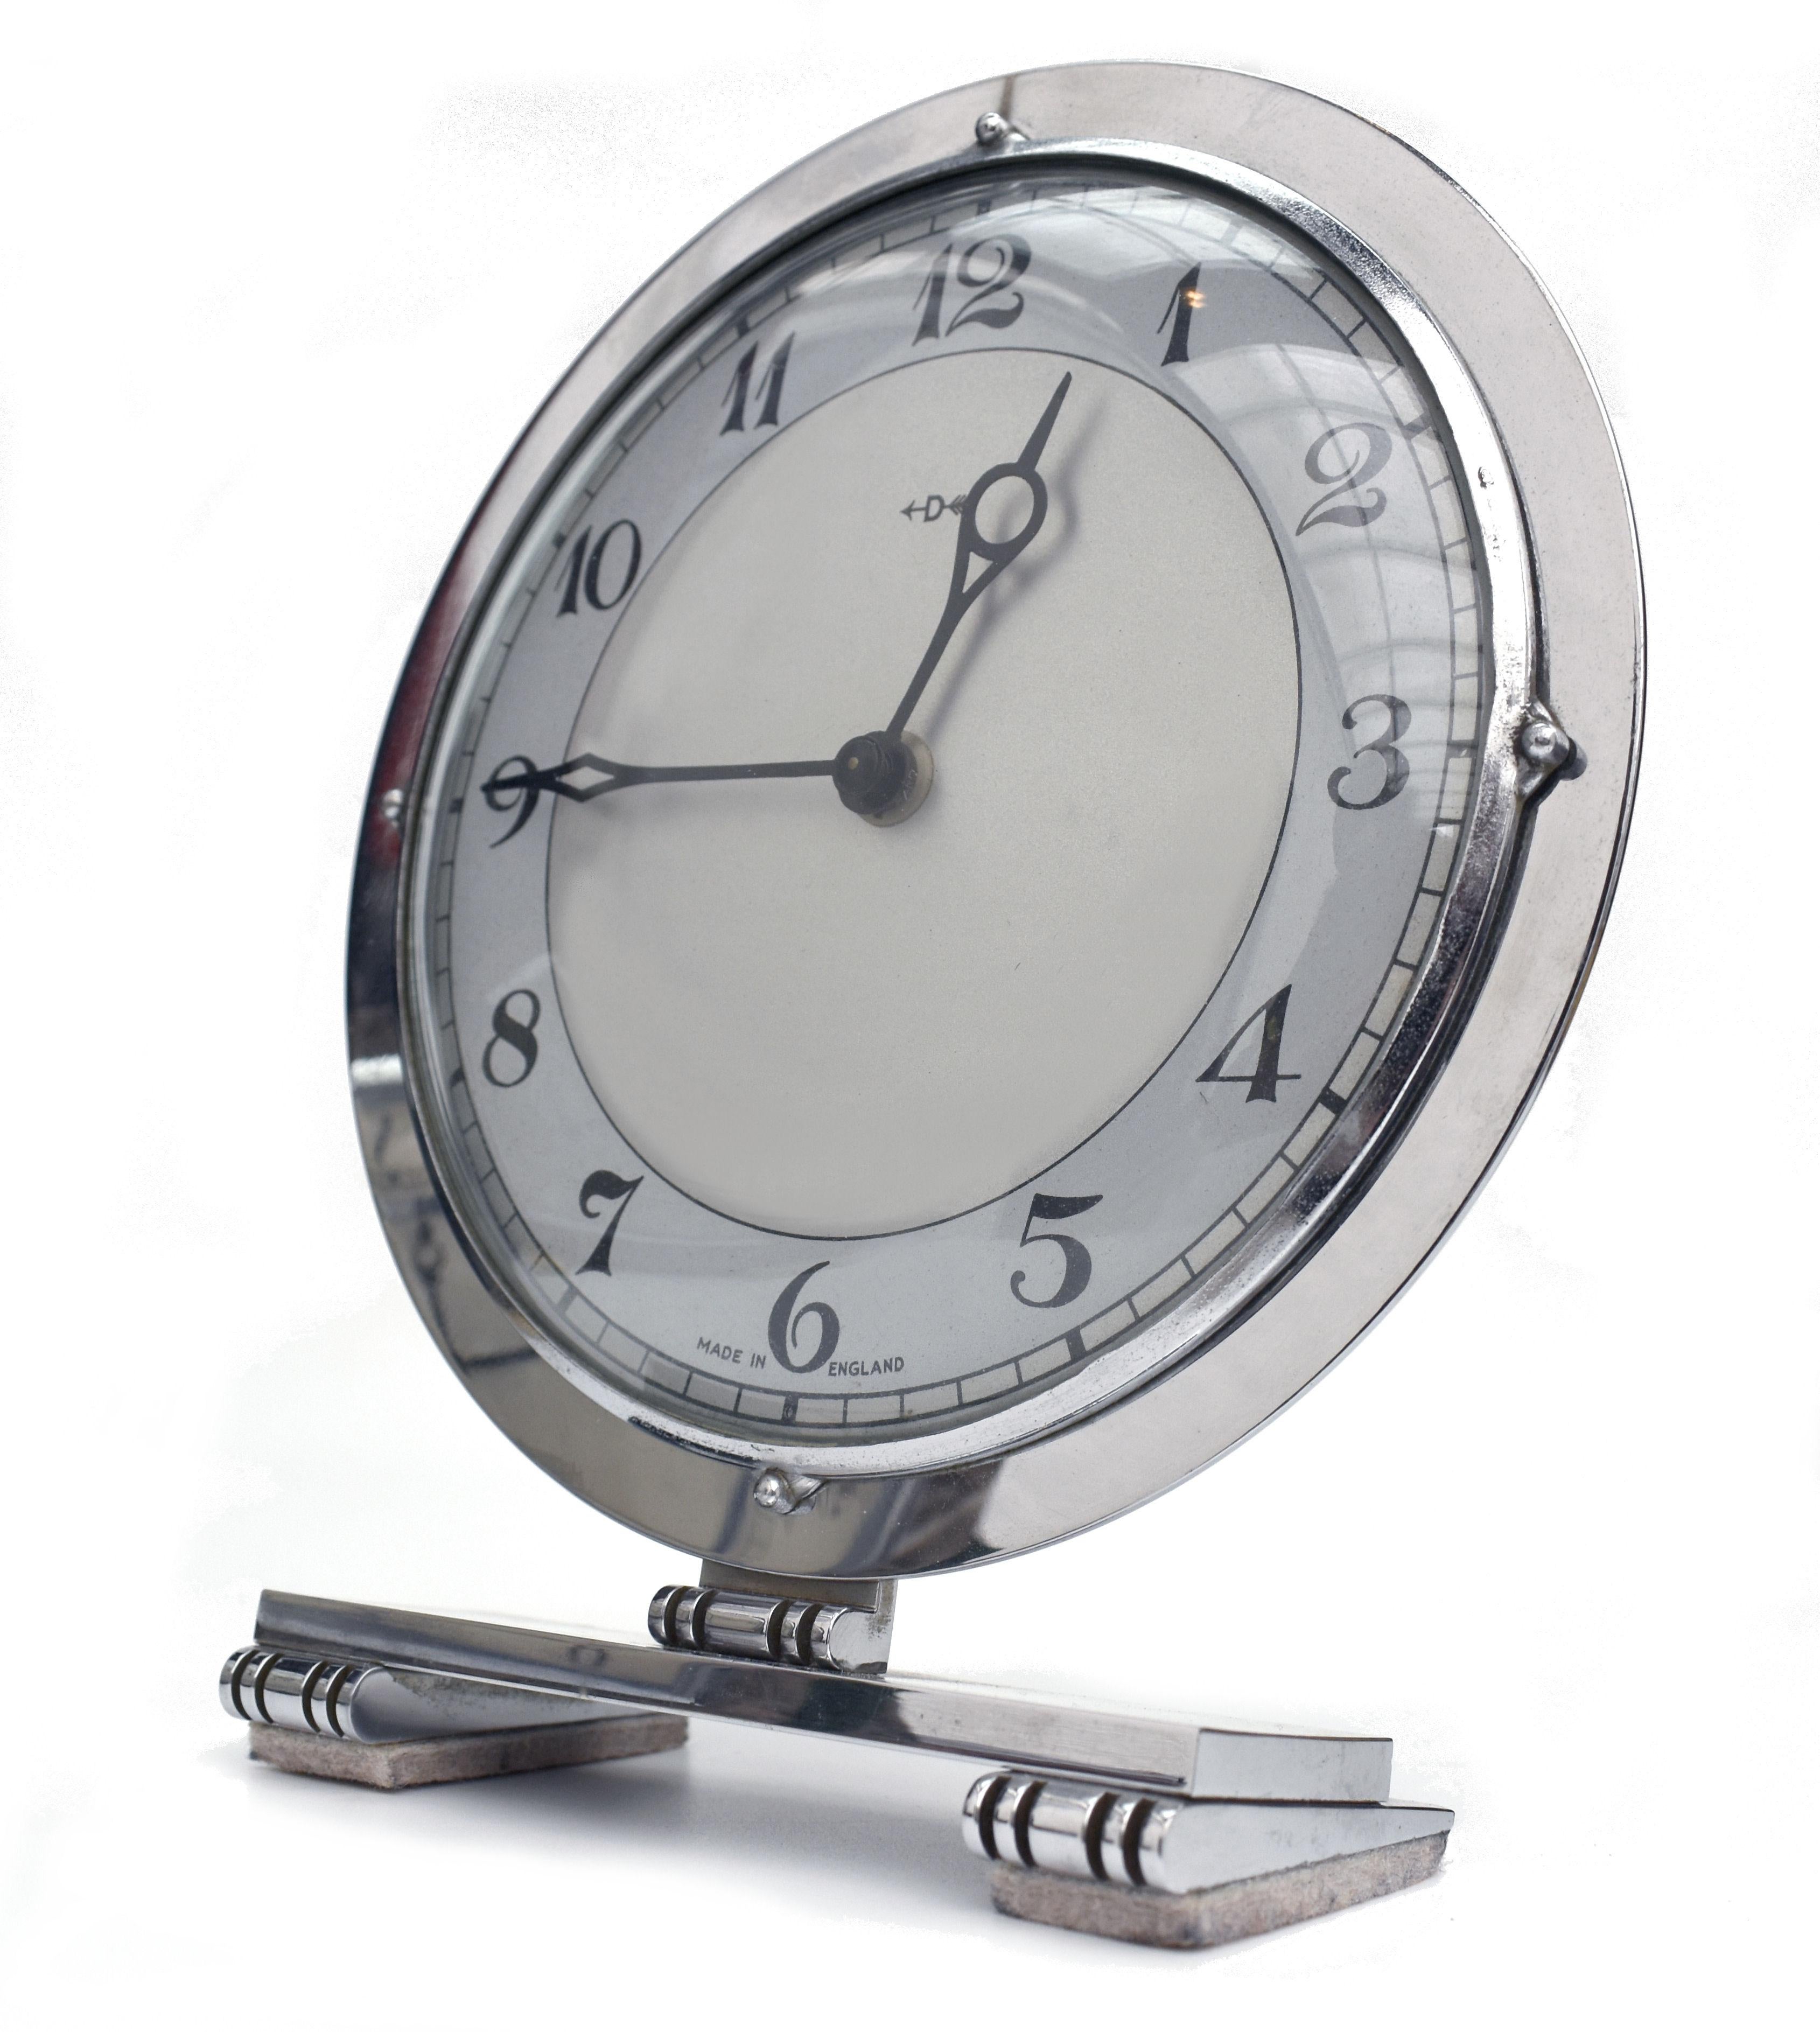 Il s'agit d'une superbe horloge Art Déco chromée fabriquée par les horlogers anglais Smiths. Elle possède un mouvement de 8 jours et est en excellent état de fonctionnement, ayant été entièrement révisée par un horloger qualifié. D'un design